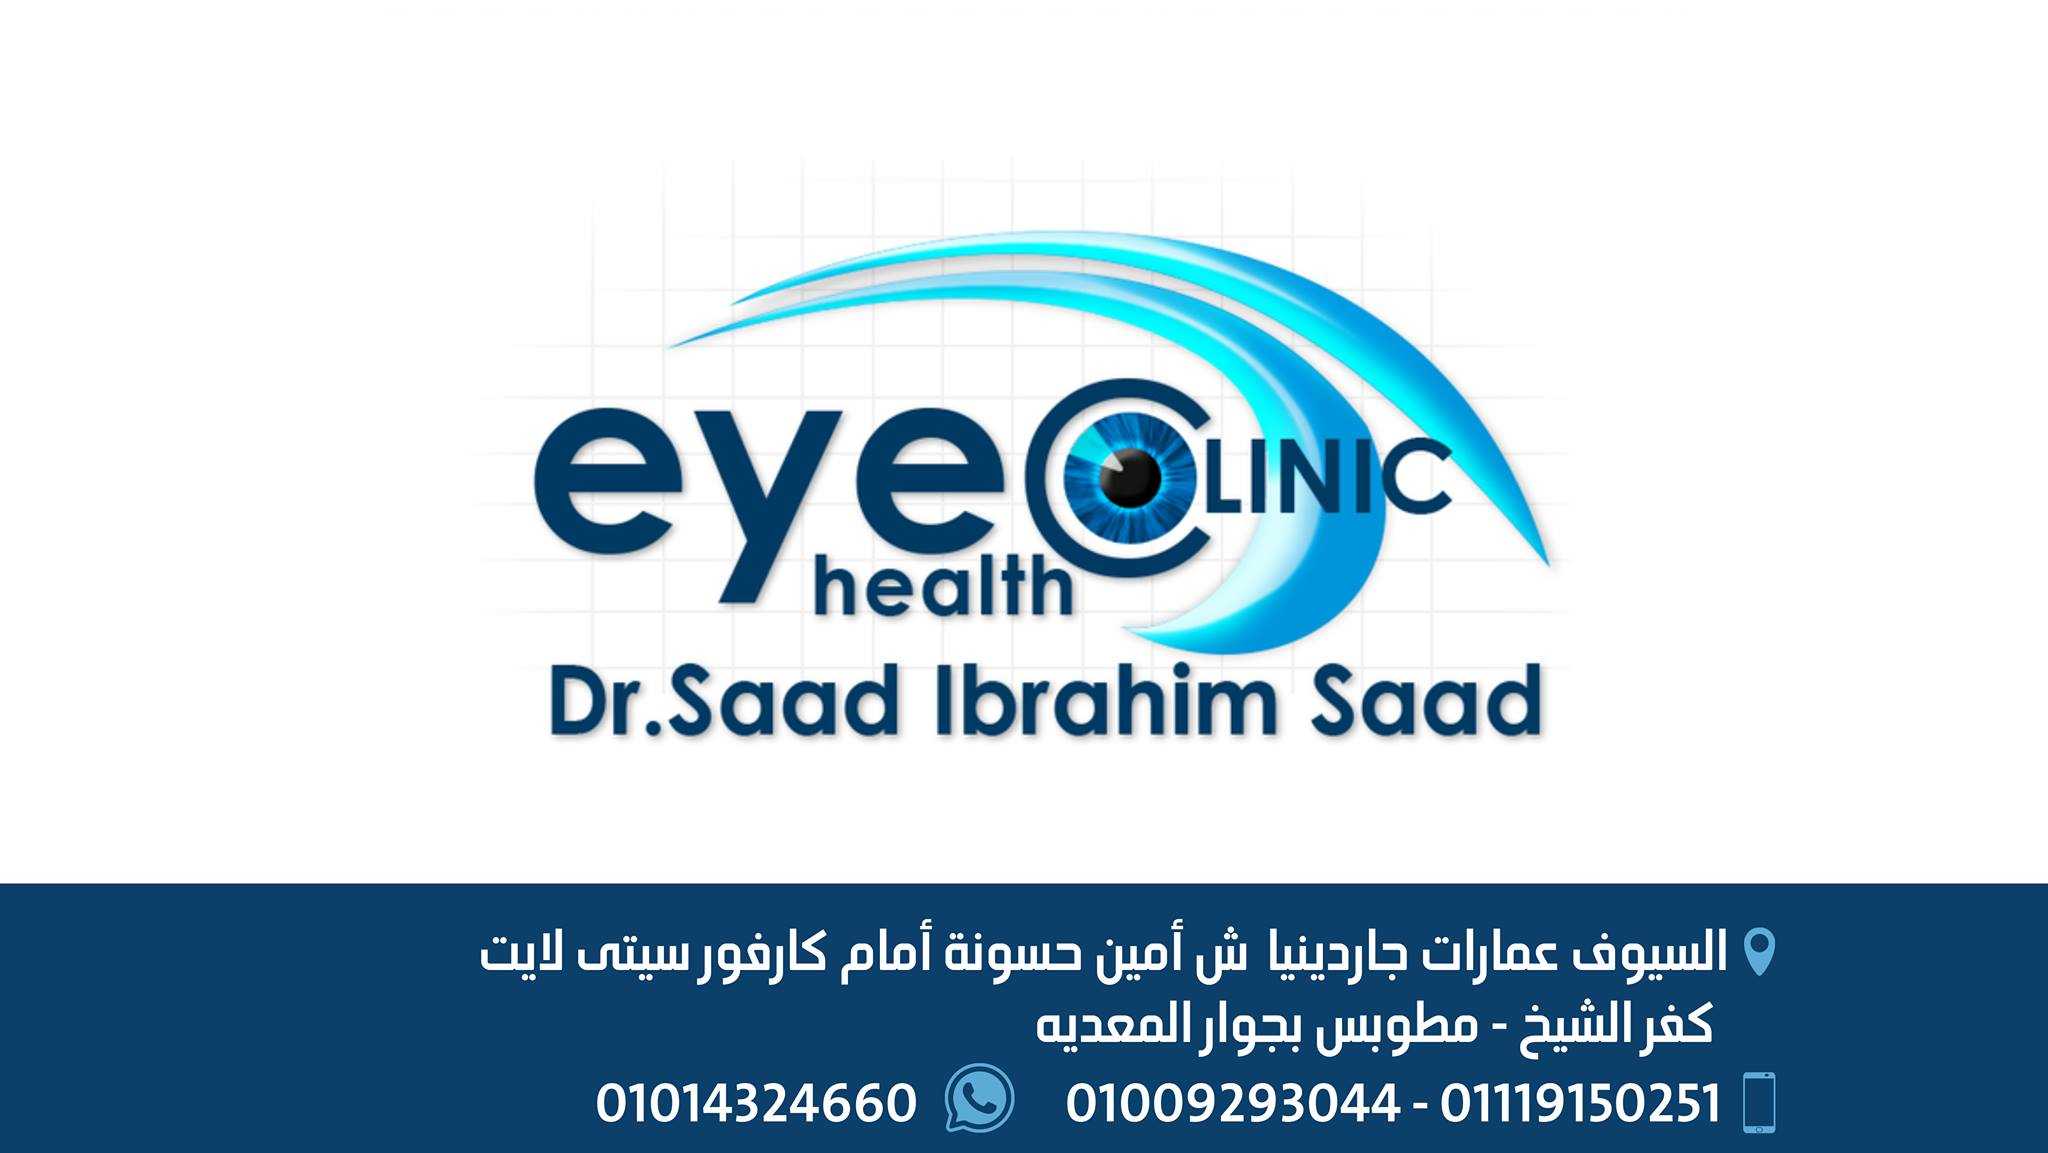 د/ سعد إبراهيم سعد ...... أخصائى جراحات العيون